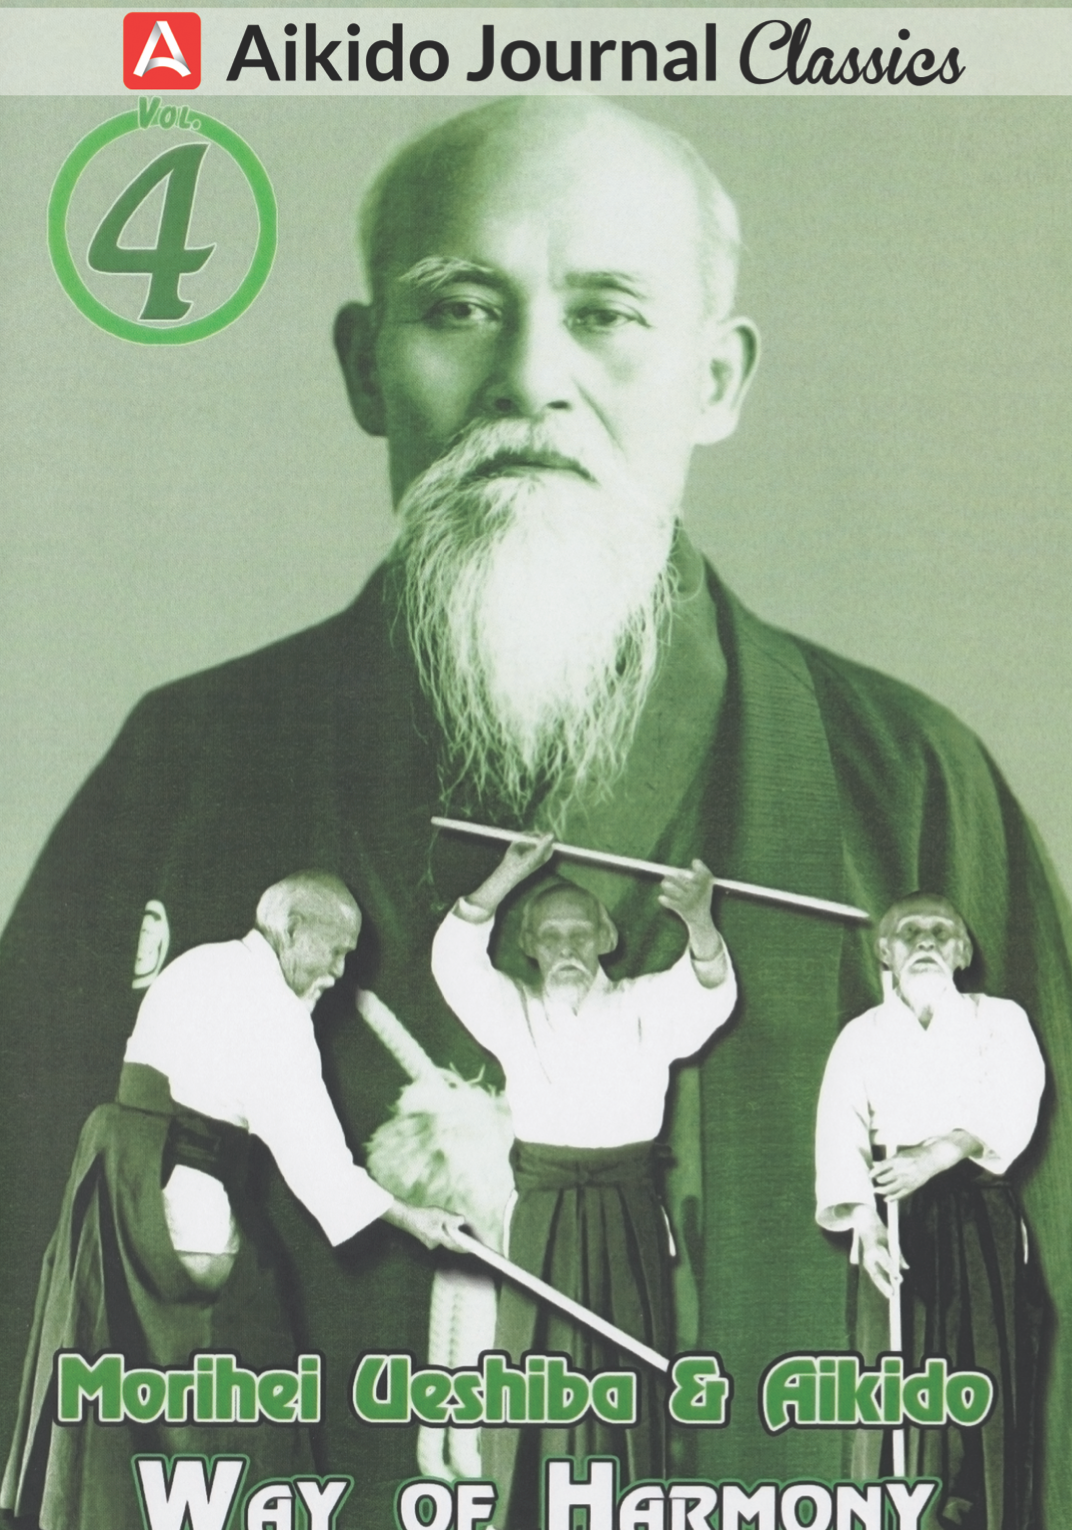 Morihei Ueshiba & Aikido 4: Way of Harmony DVD (usado)